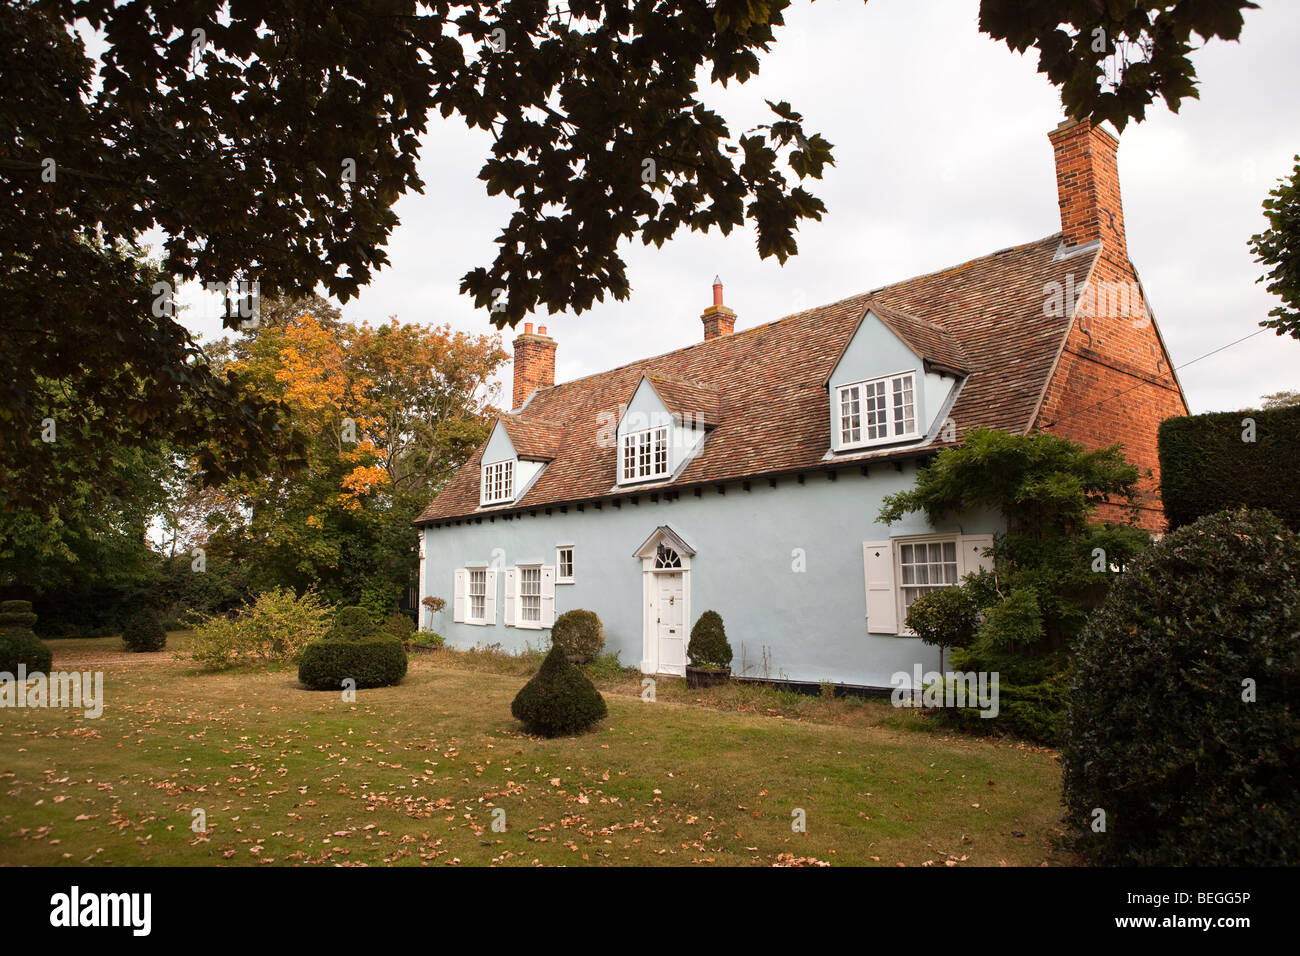 England, Cambridgeshire, Huntingdon, Brampton Dorfanger, Ferienhaus mit Gauben im Dach Stockfoto